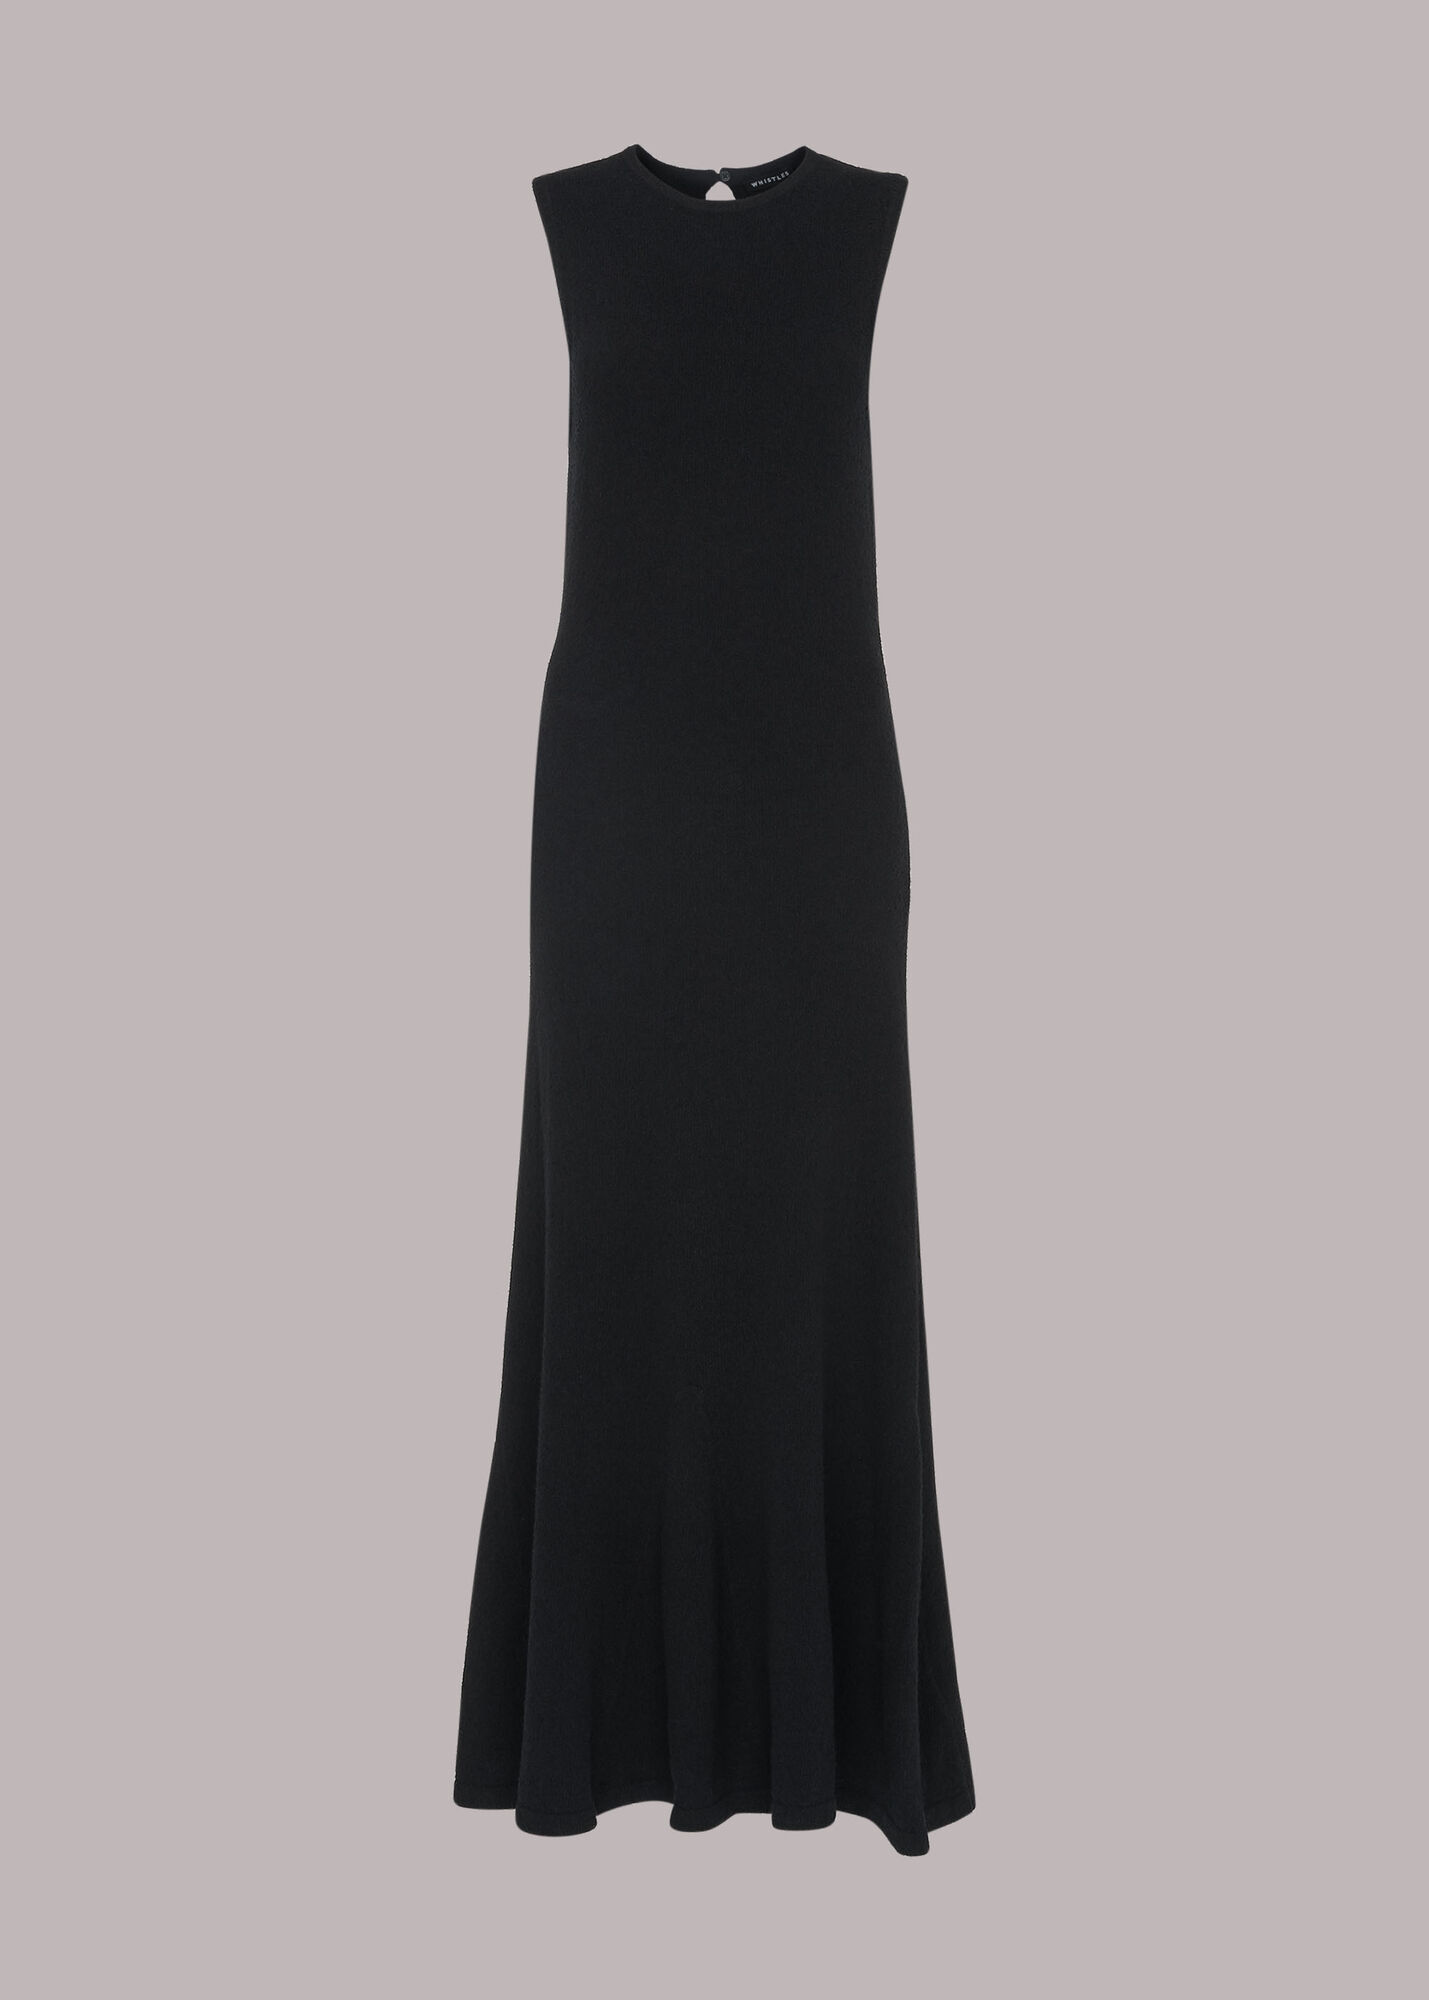 Black Flare Knit Dress | WHISTLES | Whistles UK